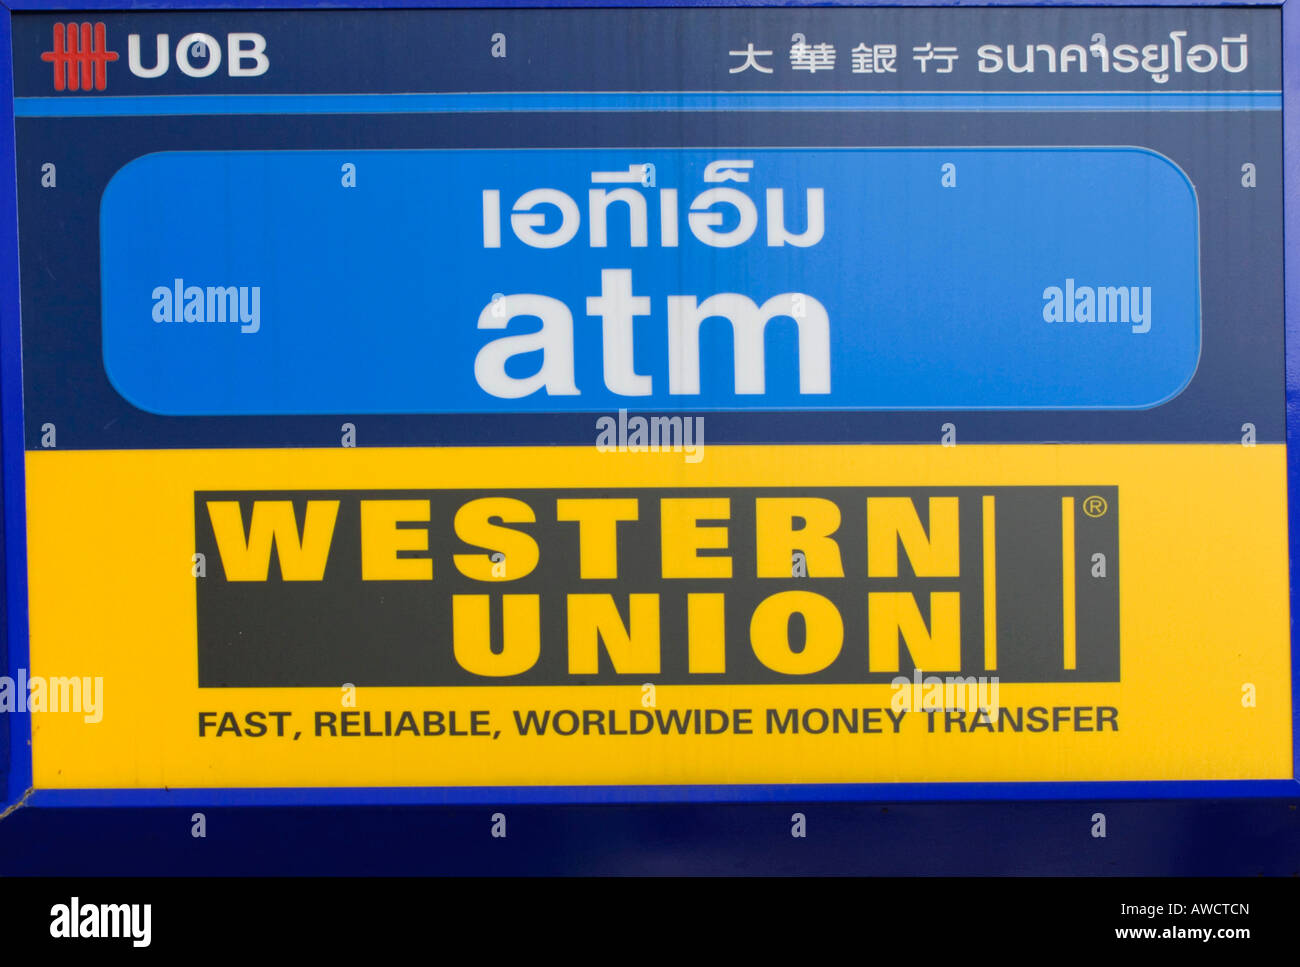 Western Union unterzeichnen in Thailand, Südostasien, Asien Stockfotografie  - Alamy